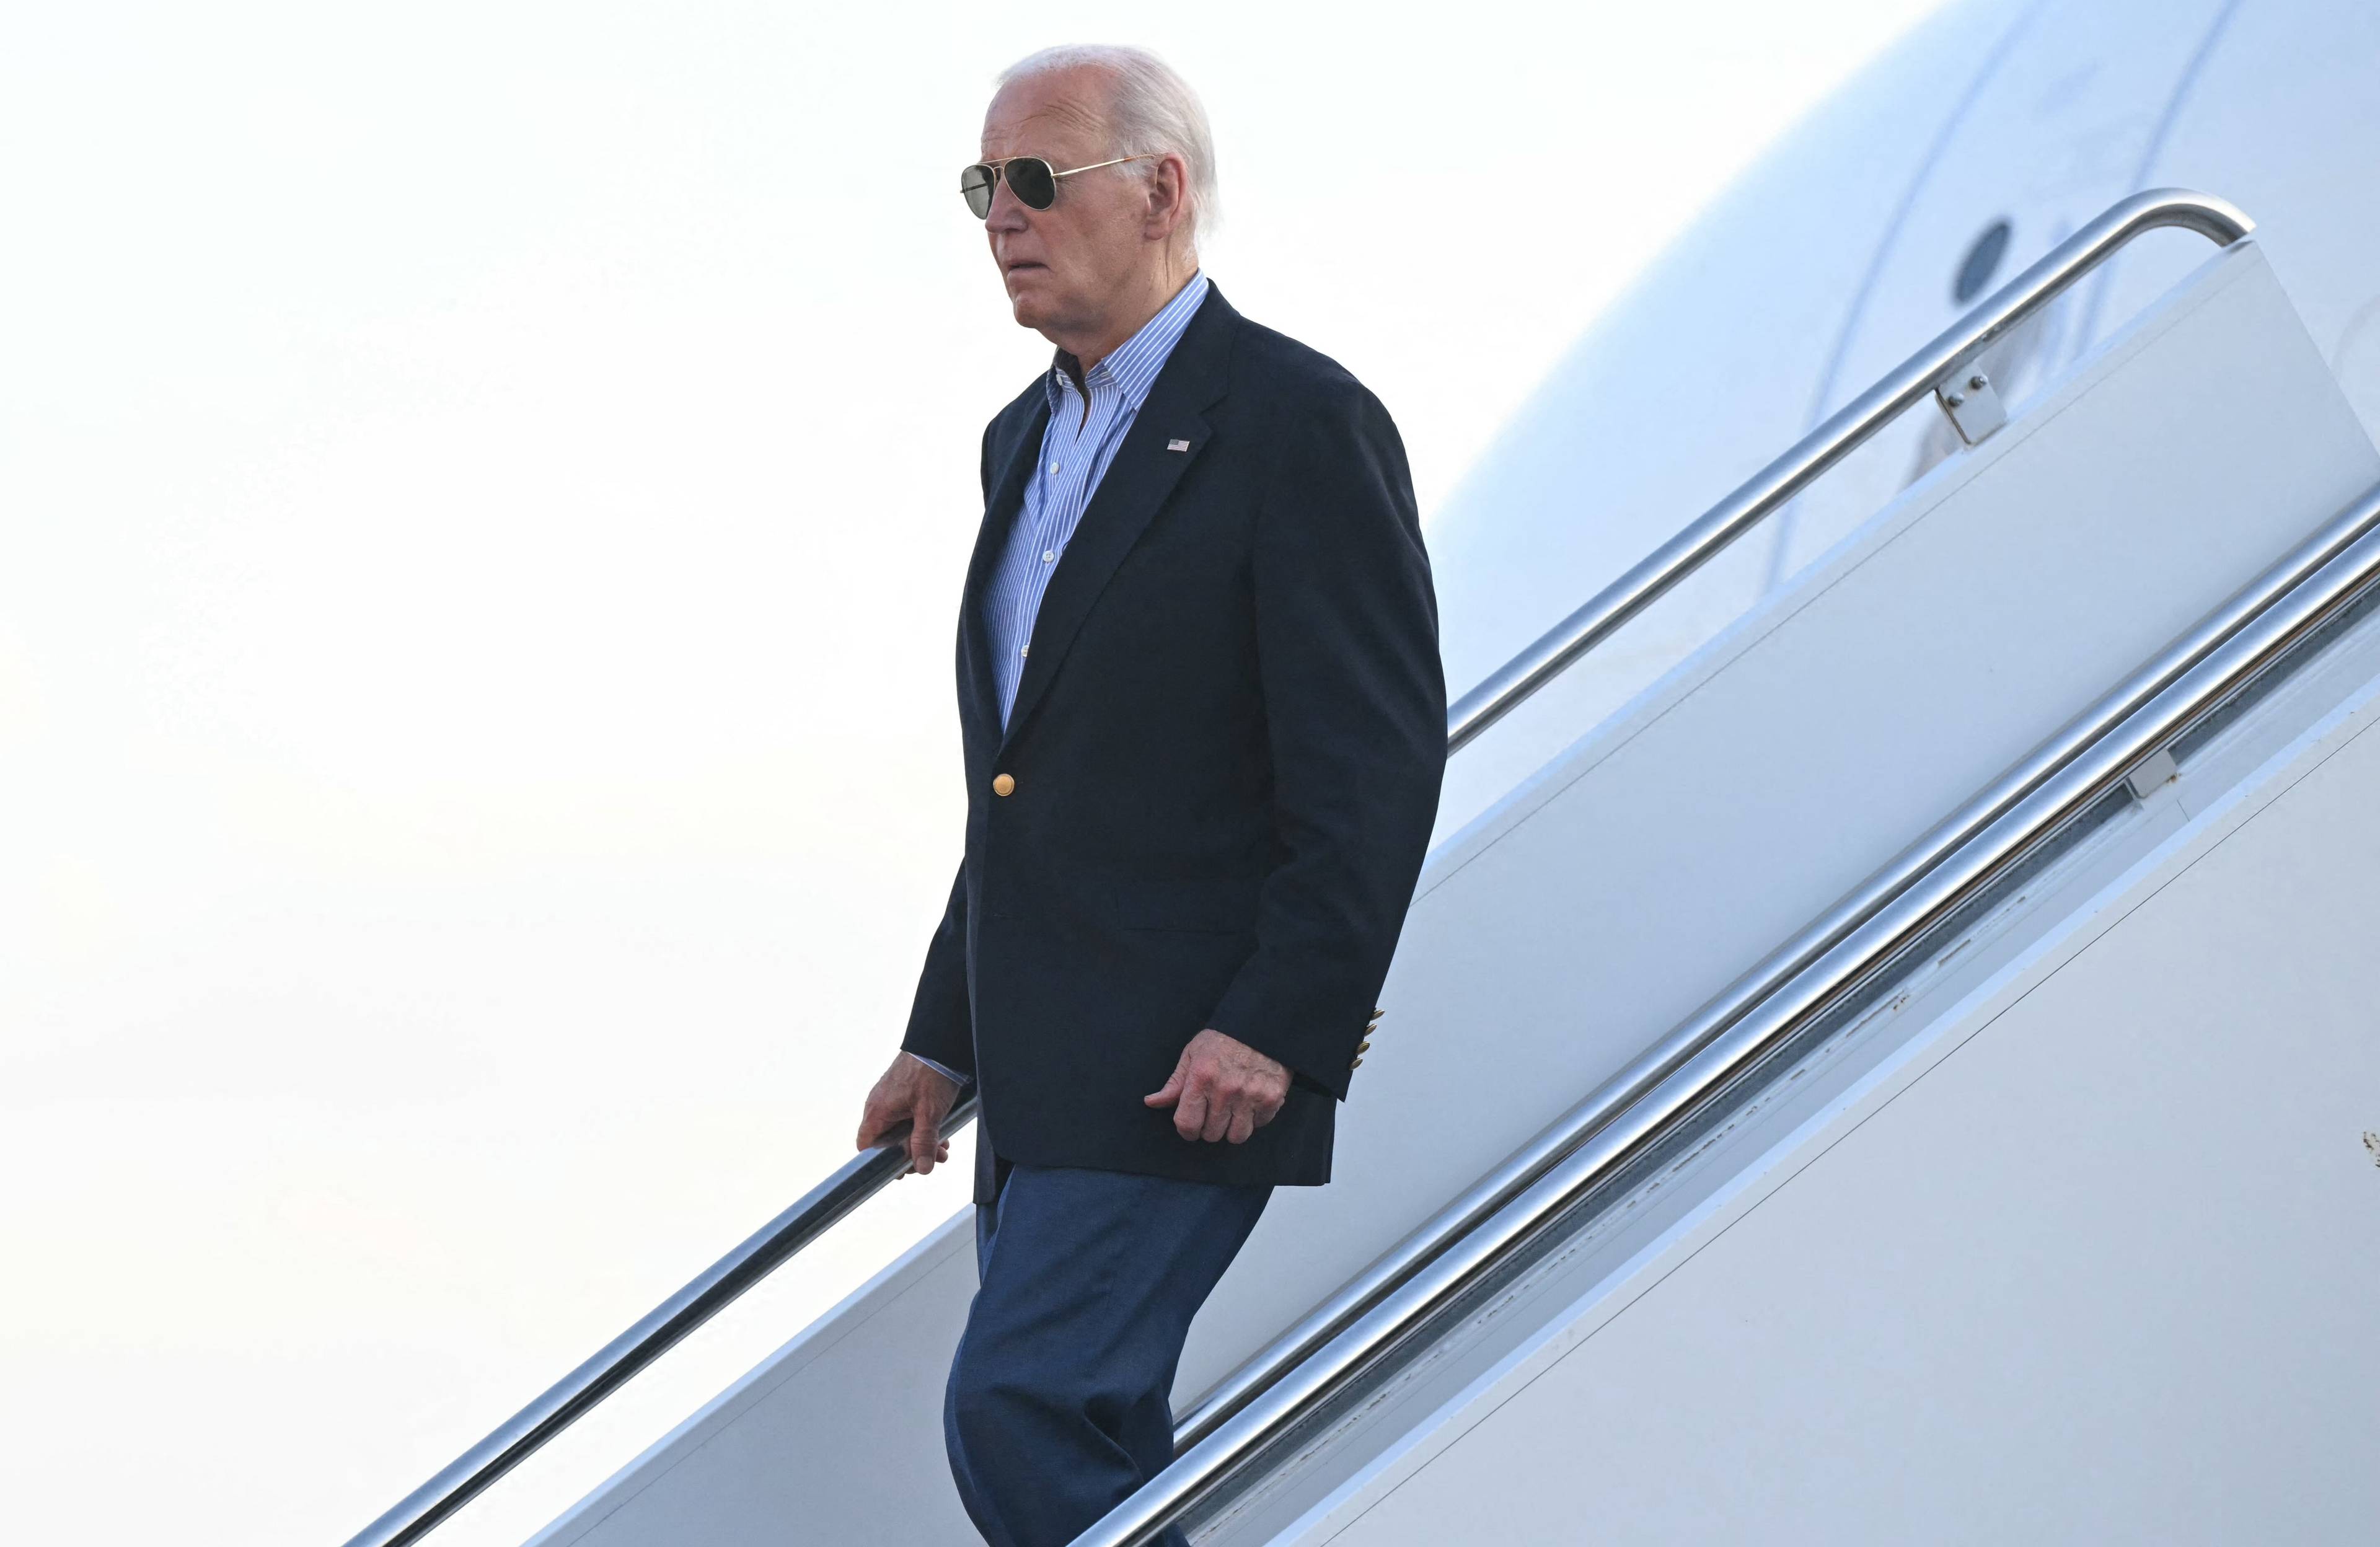 Prezydent USA Joe Biden wychodzi po schodach z samolotu